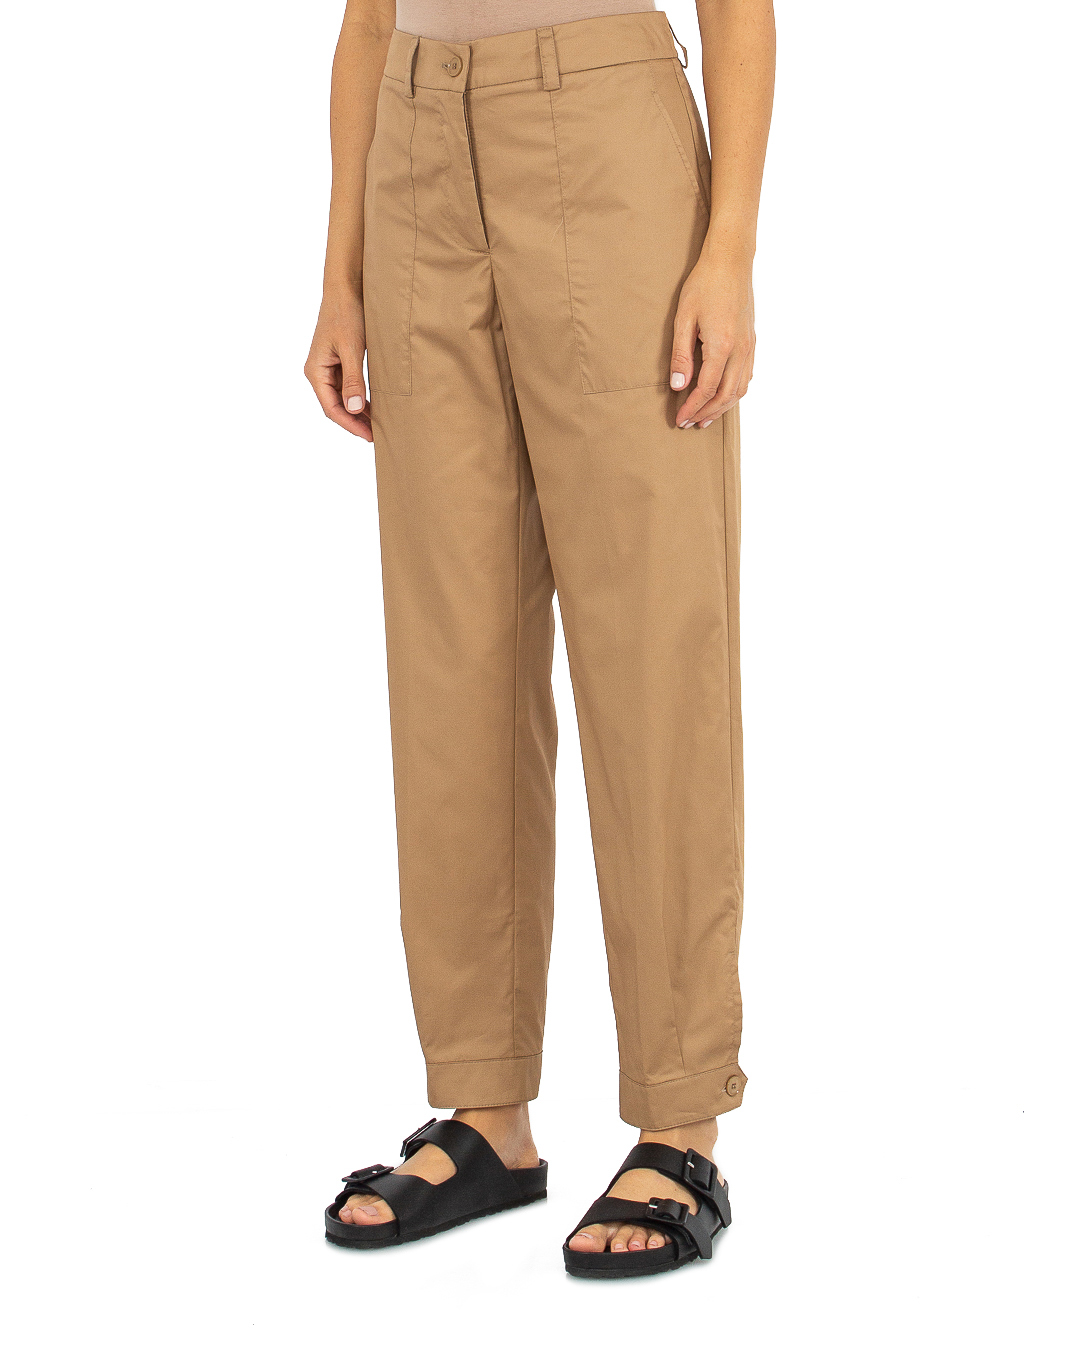 брюки ICONA BY KAOS PP5MR011 коричневый 40, размер 40 - фото 3